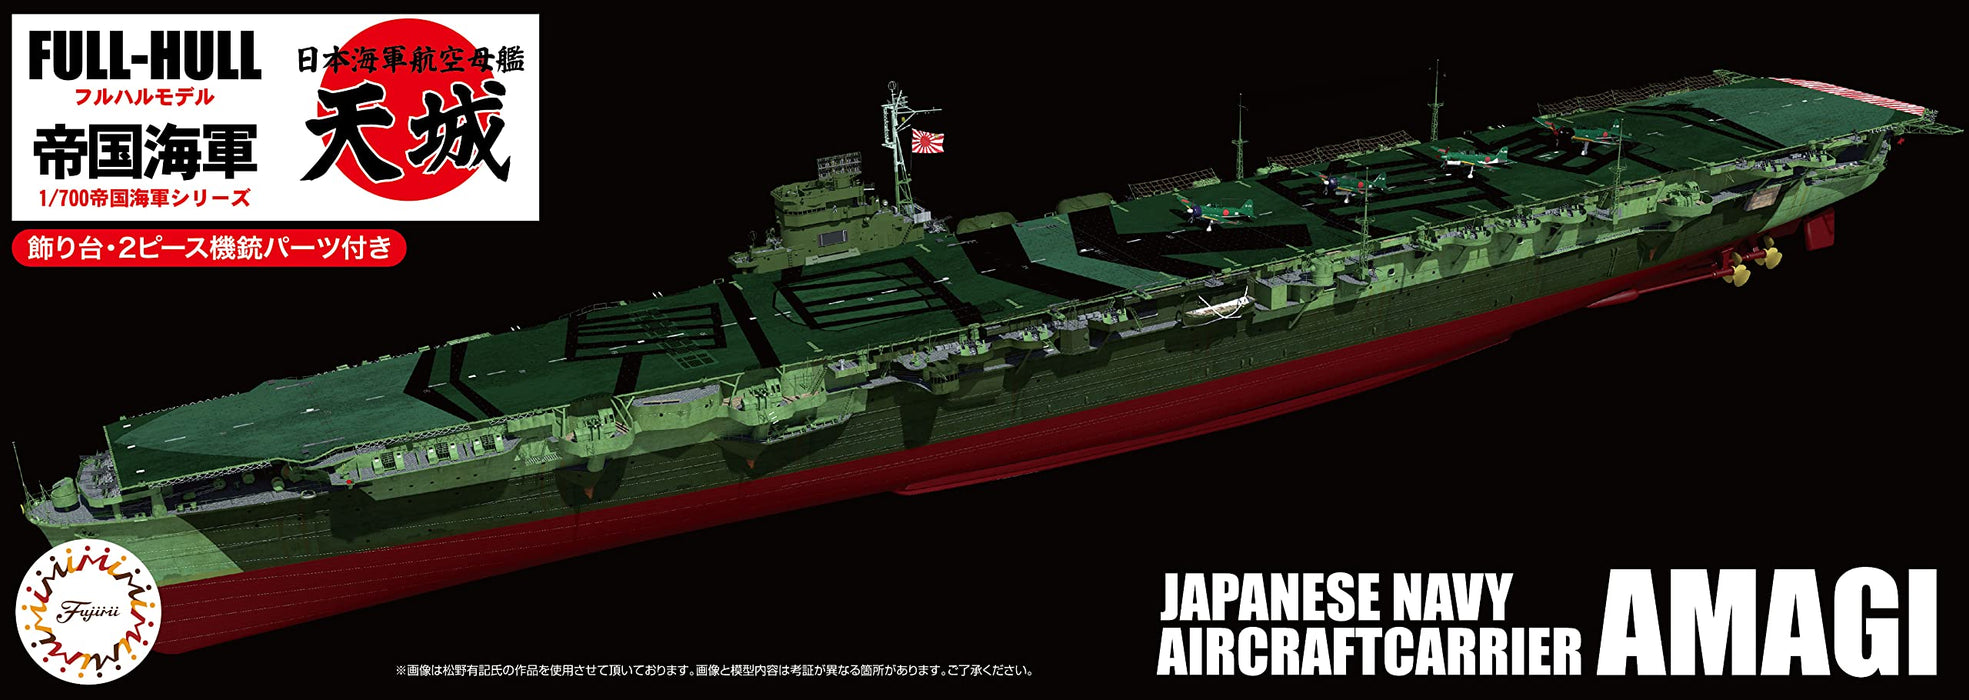 Fujimi Model 1/700 Kaiserlich Japanische Marine Serie Nr. 41 Flugzeugträger der japanischen Marine Amagi Vollrumpfmodell Fh-41